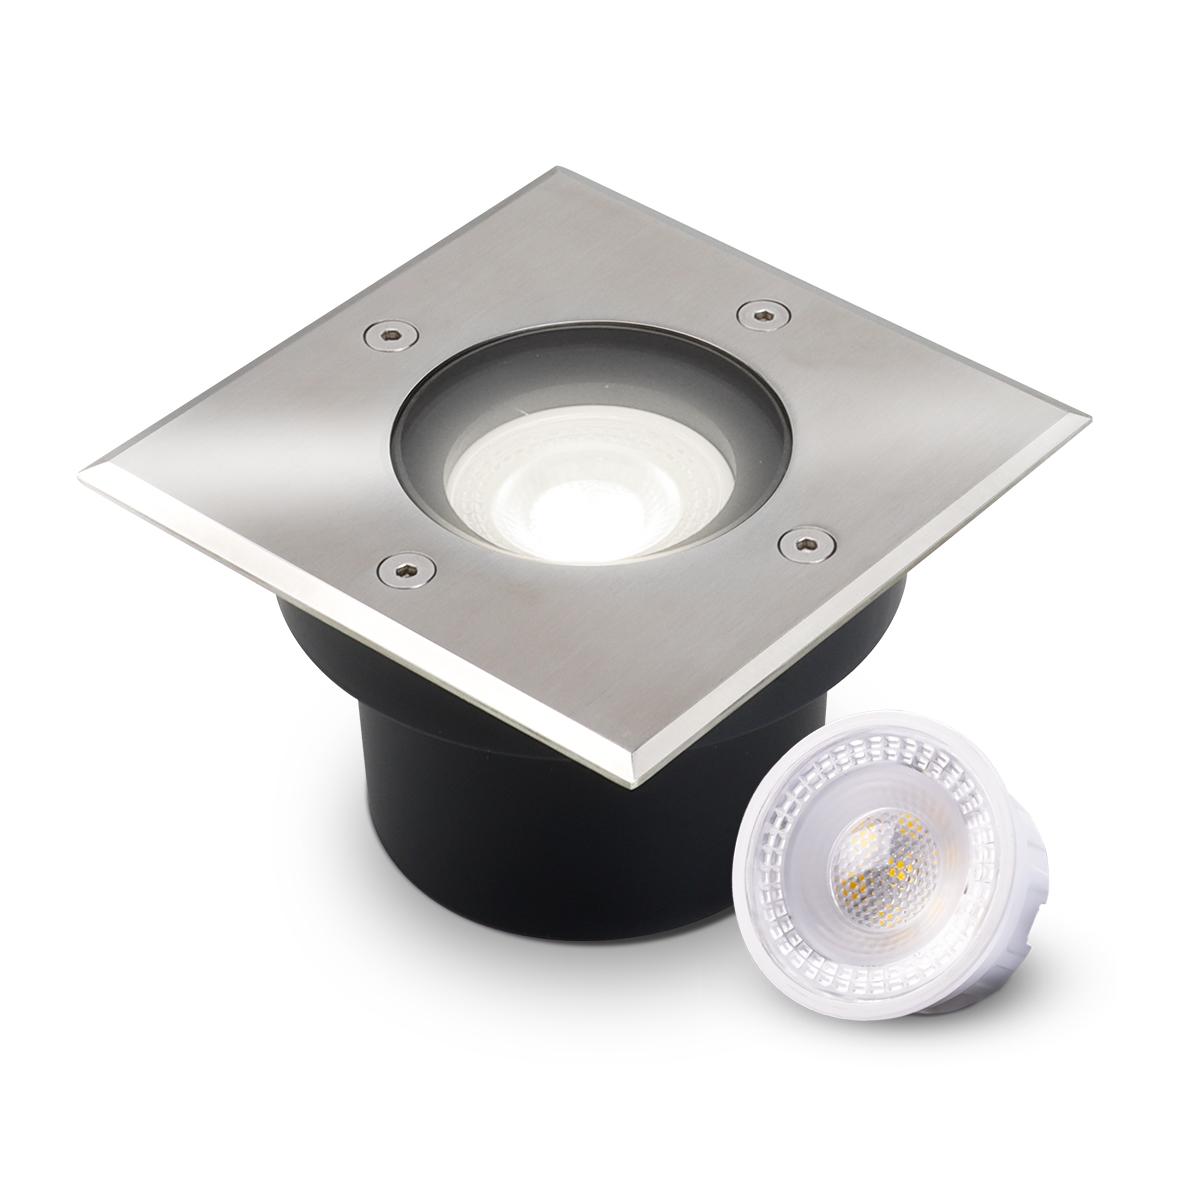 LED Bodeneinbaustrahler flach eckig Edelstahl 230V IP67 - Leuchtmittel: 5W 4000K DIMMBAR 60° - Anzahl: 1x